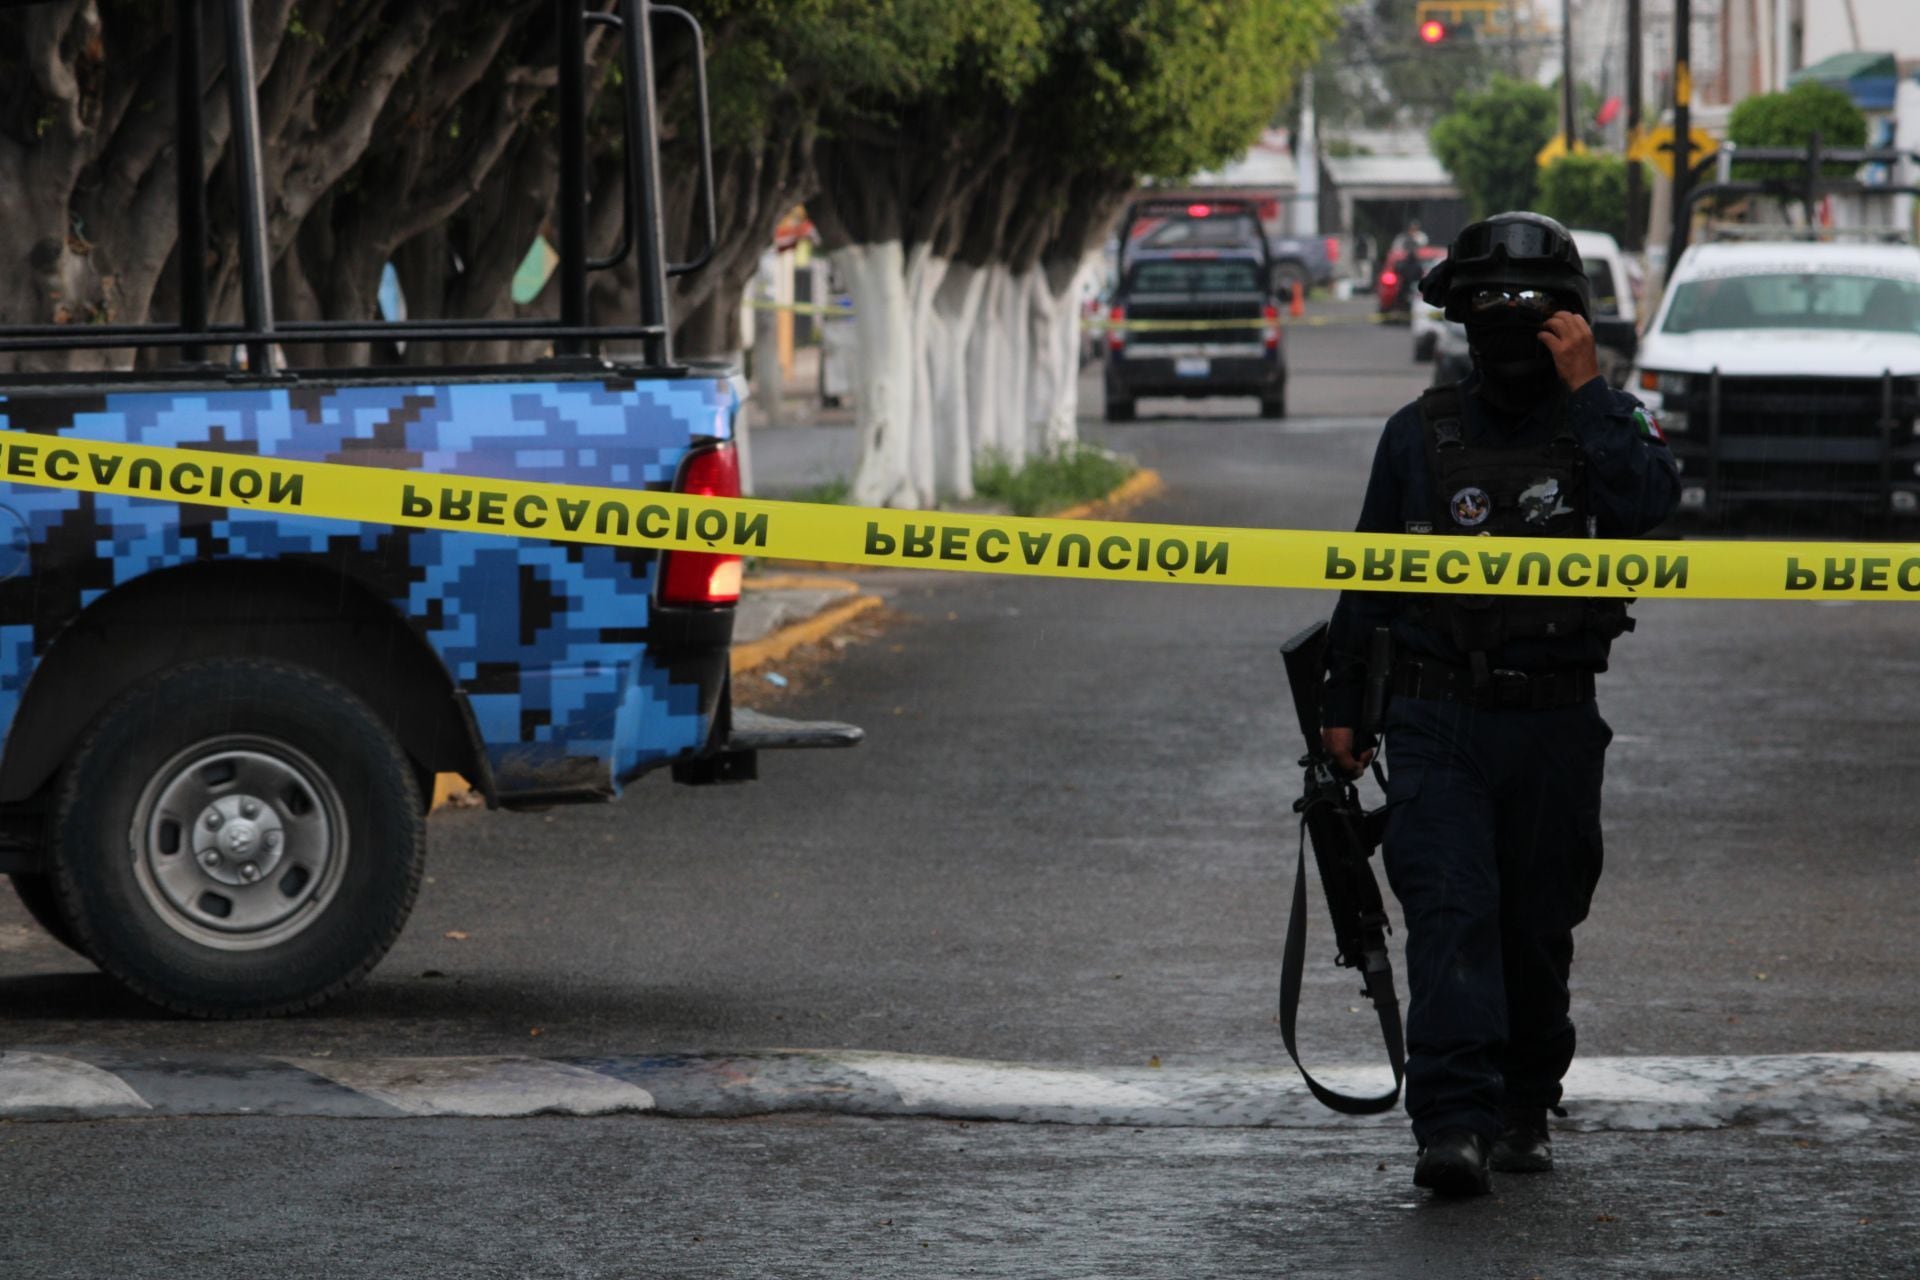 Violencia en Guanajuato: Atacan a grupo musical en pleno vals de unos XV años